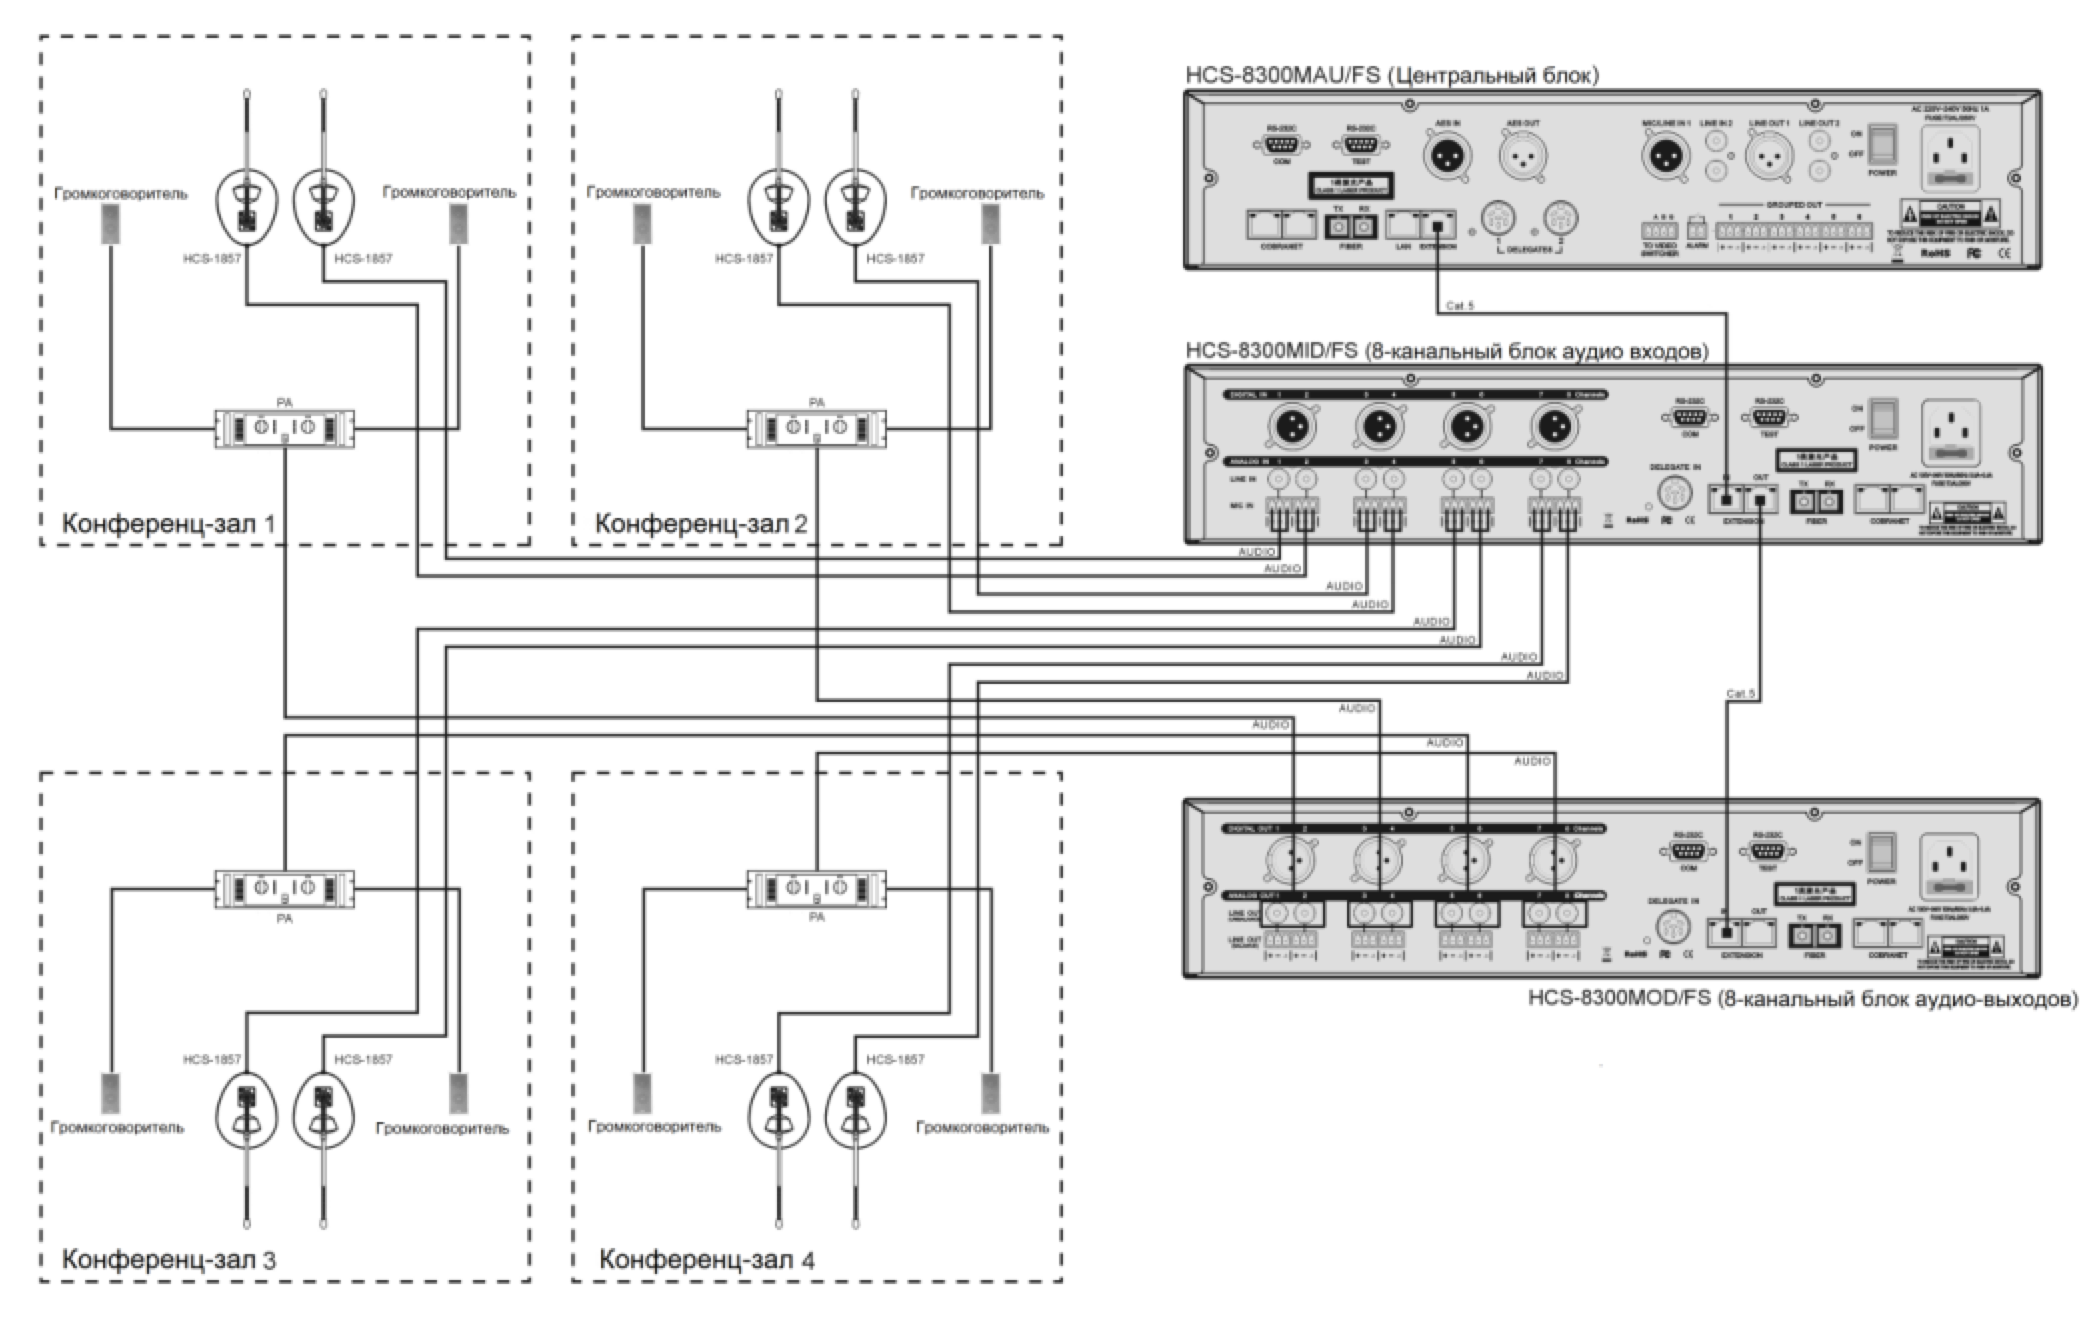 Схема подключения TAIDEN HCS-8300MOD/FS